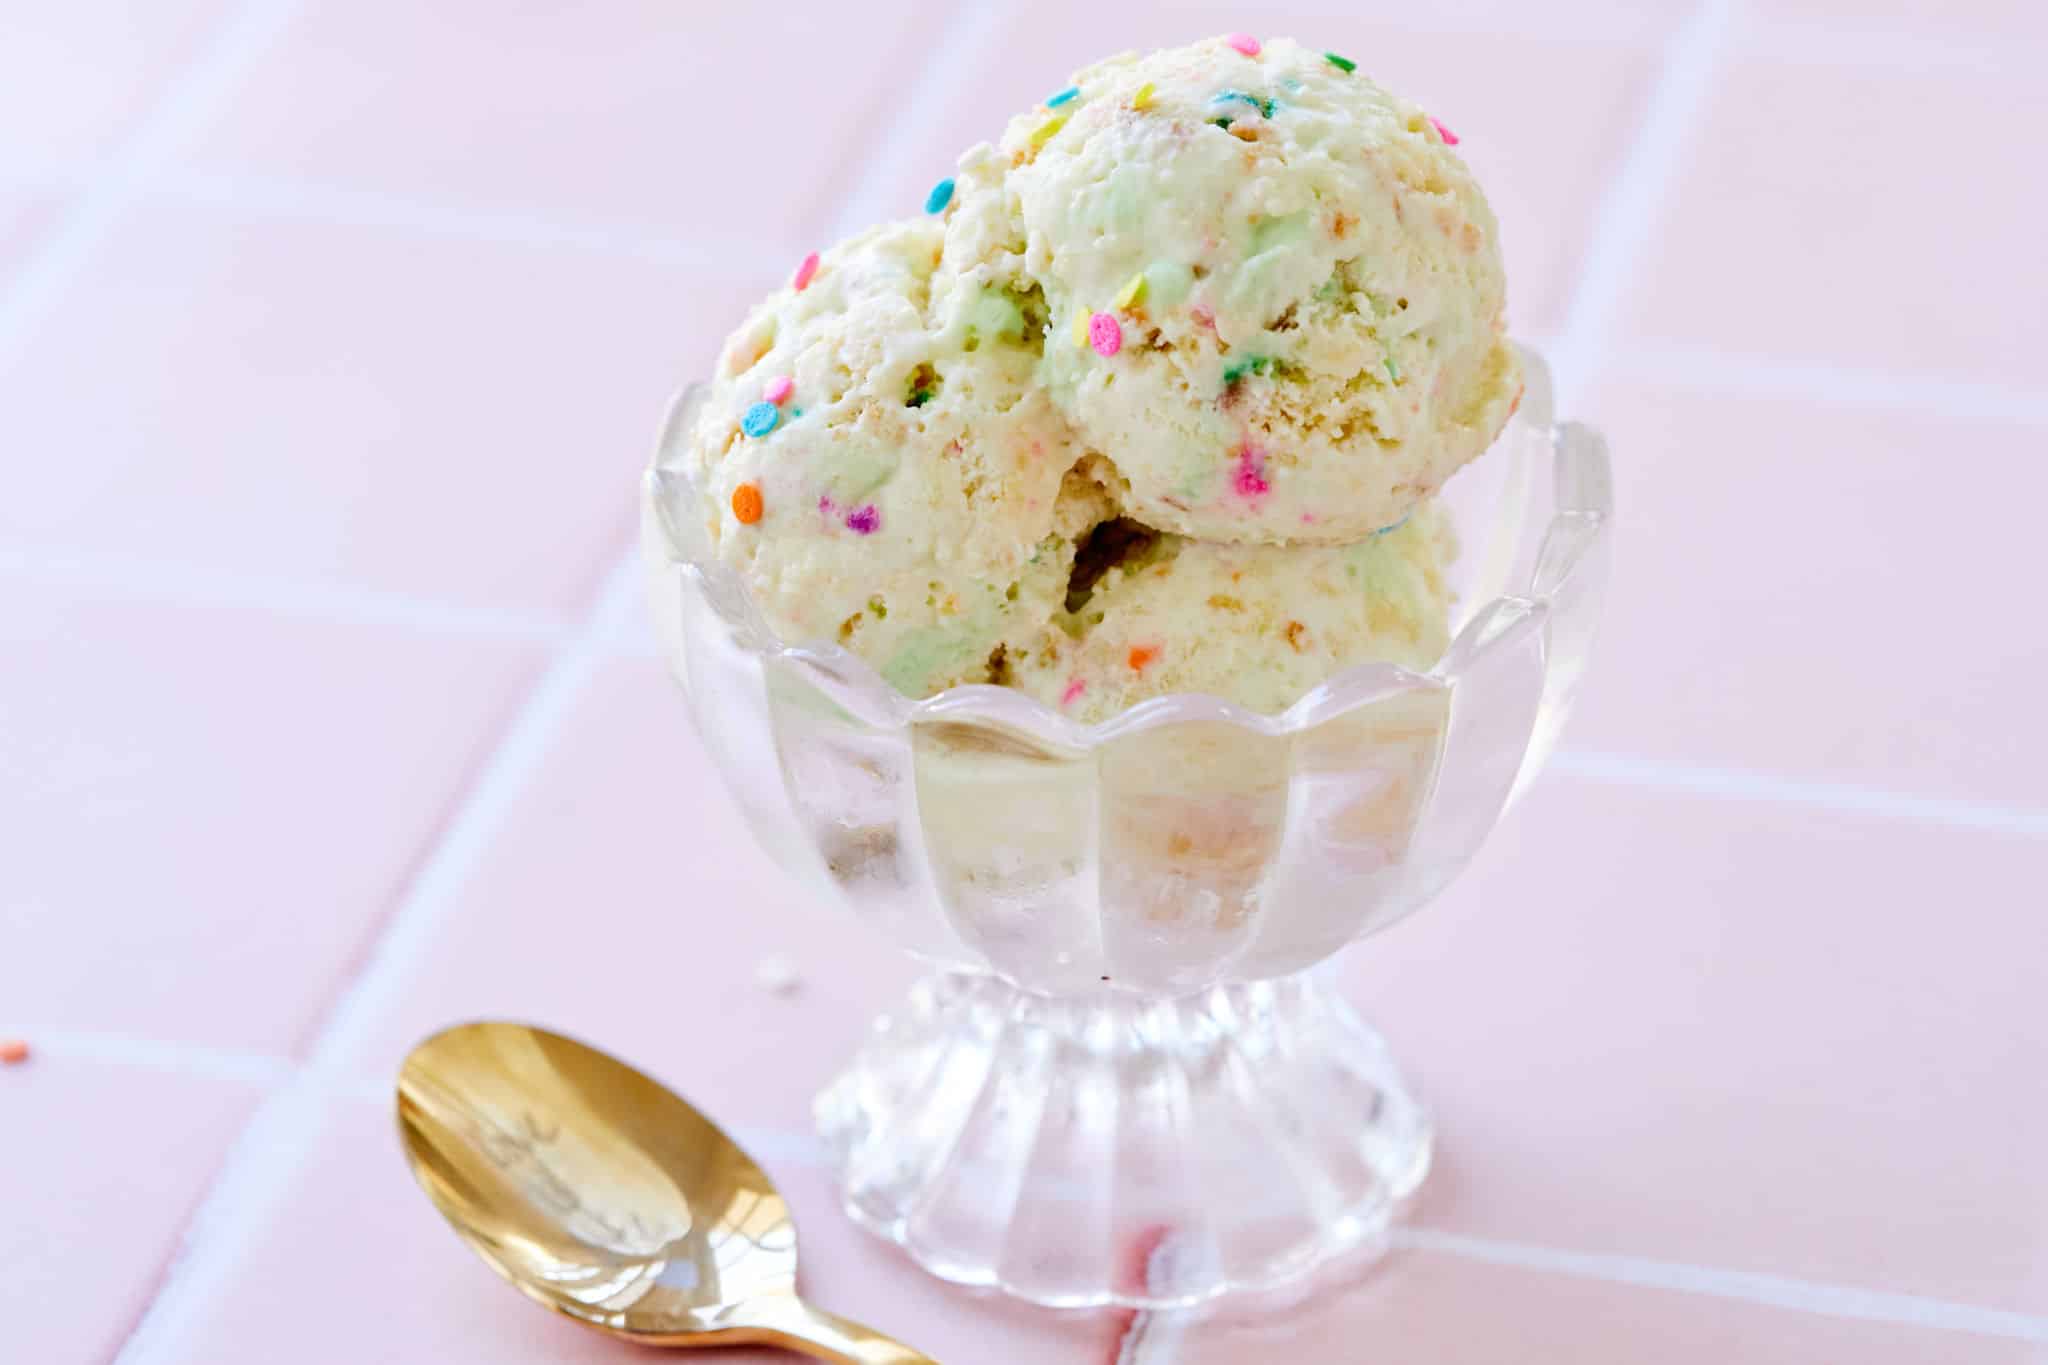 A bowl of funfetti ice cream